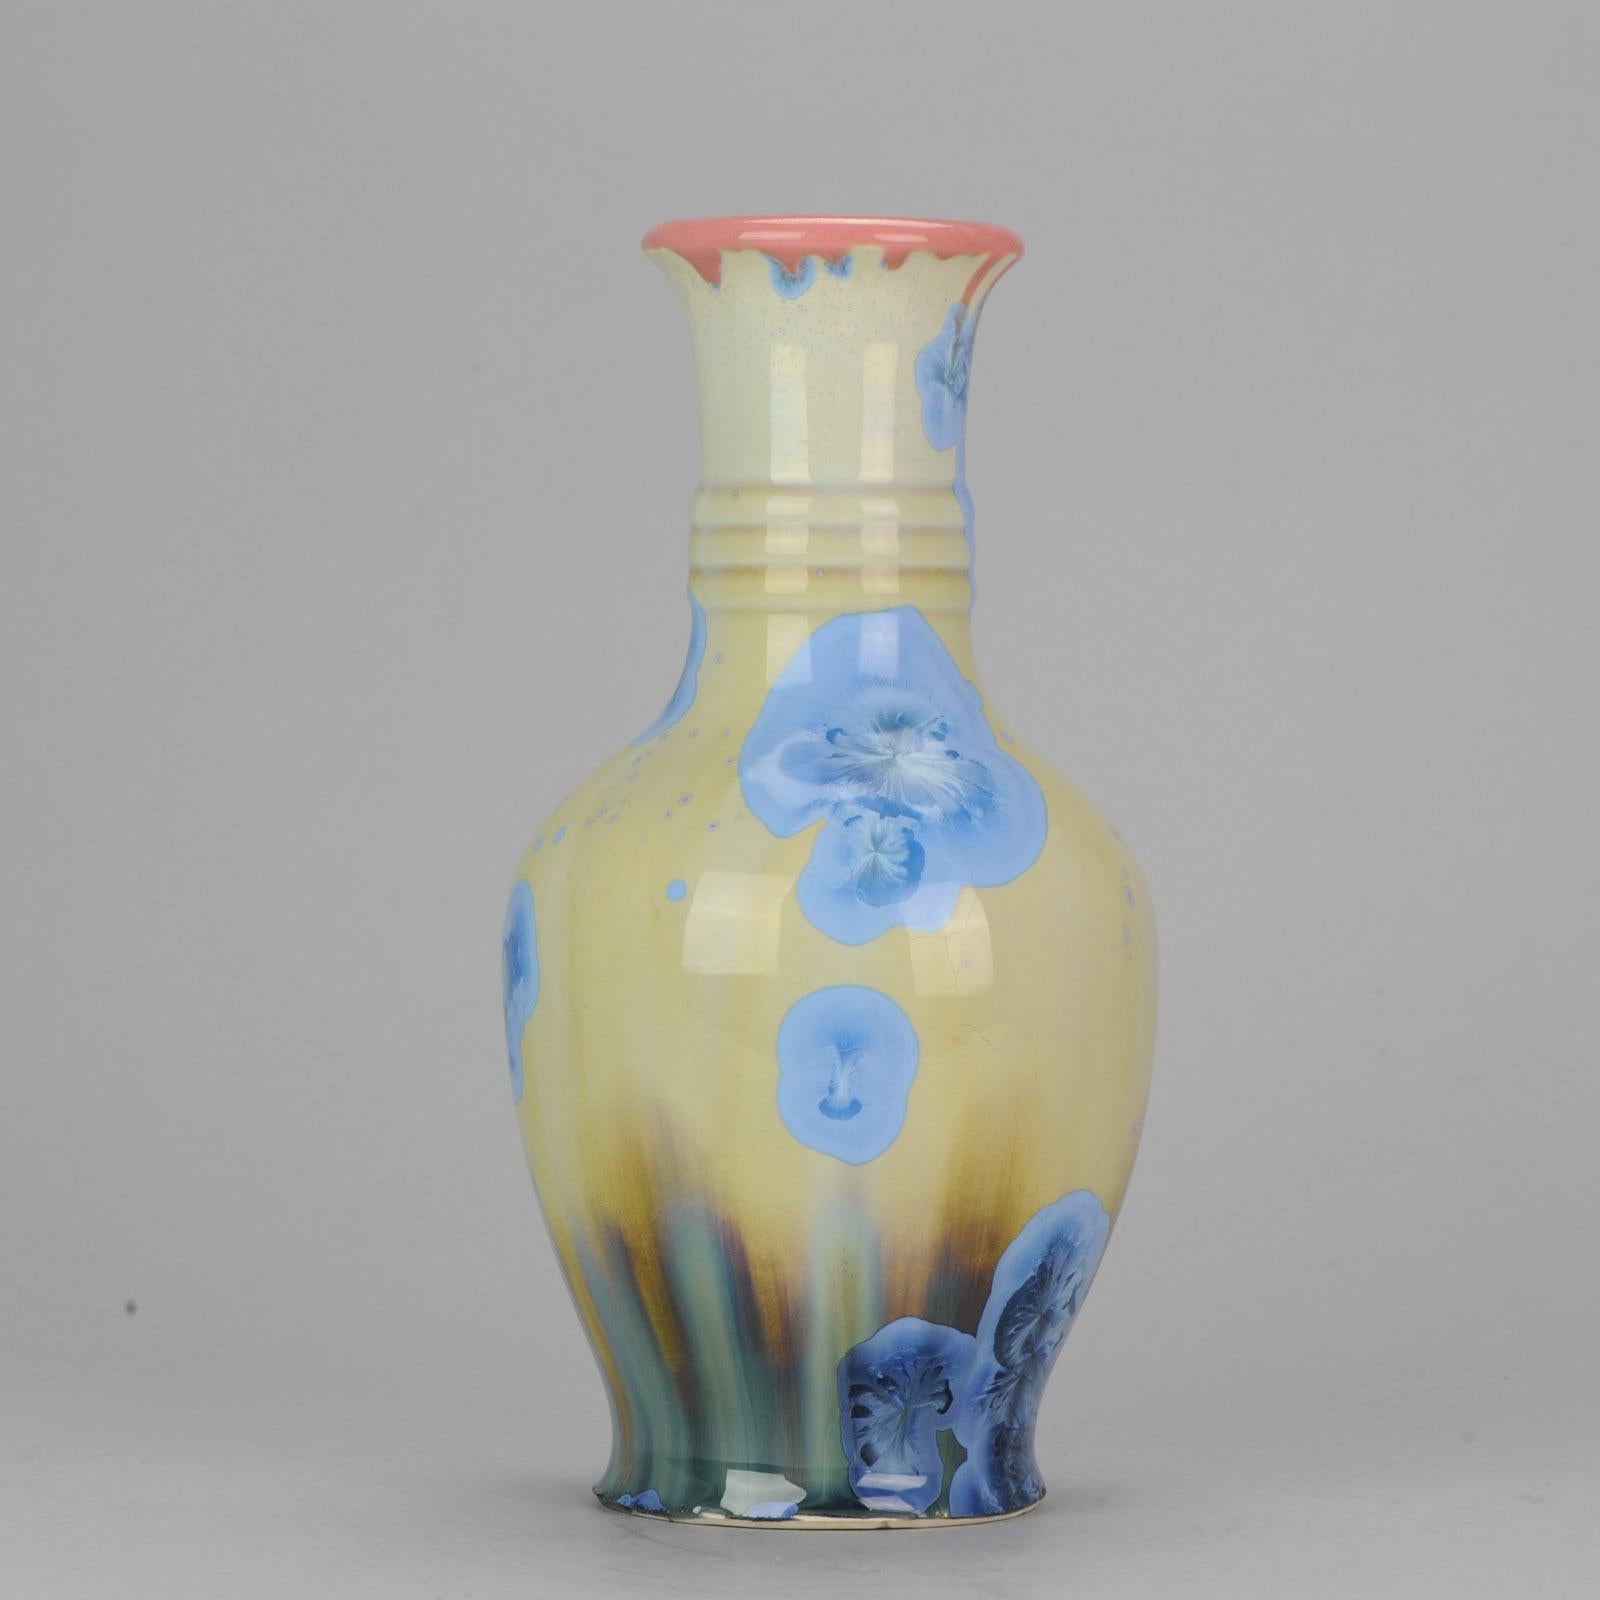 Shiwan 20th Century PRoC 1970-1980 Chinese Porcelain Vase Crystalline Glaz 2